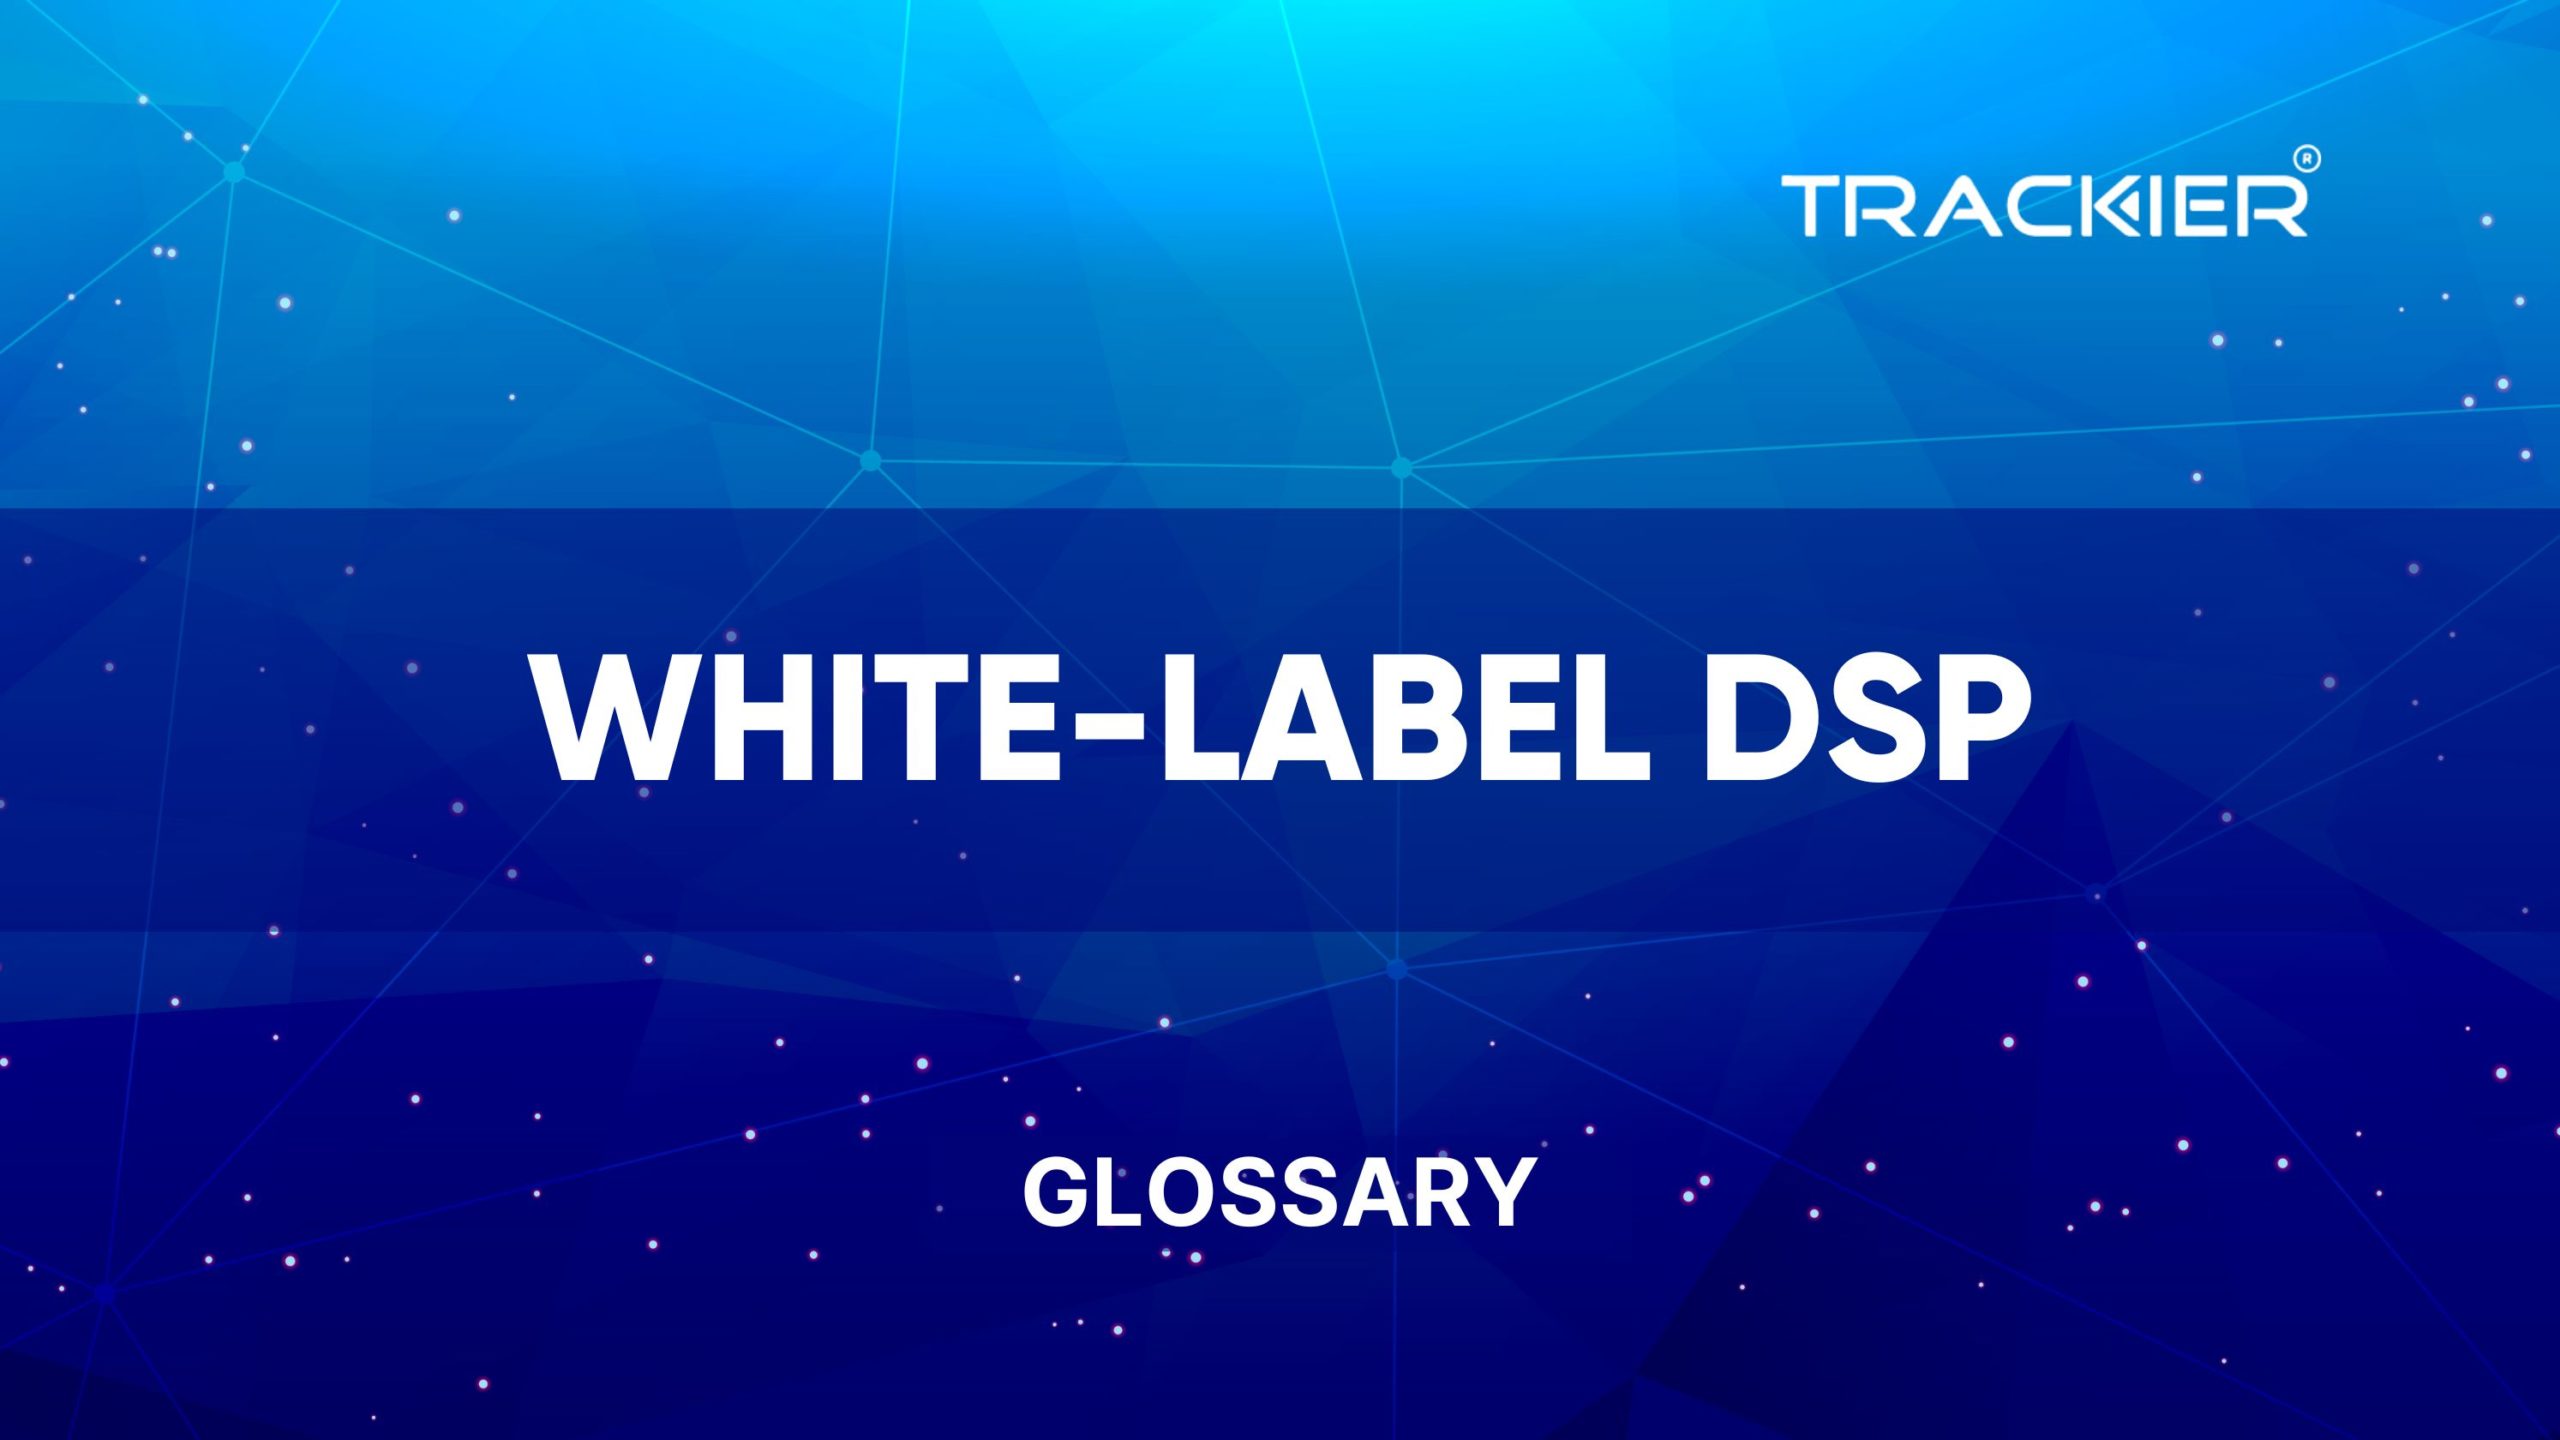 White-label DSP